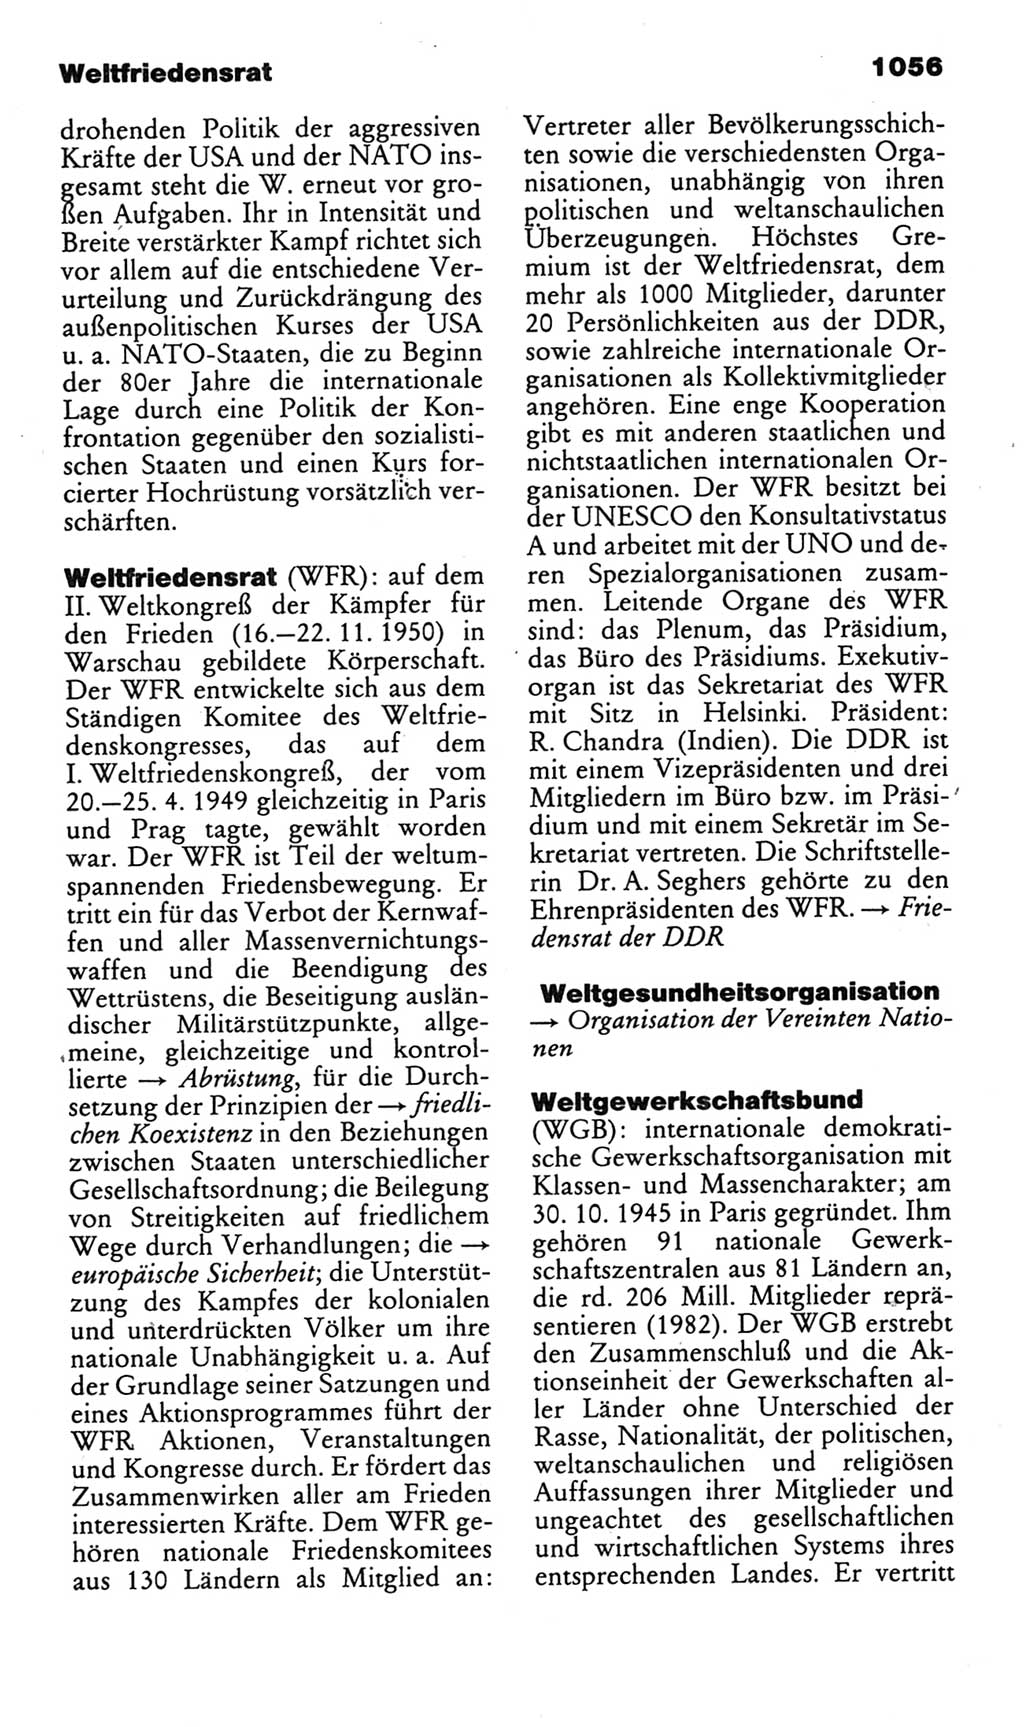 Kleines politisches Wörterbuch [Deutsche Demokratische Republik (DDR)] 1985, Seite 1056 (Kl. pol. Wb. DDR 1985, S. 1056)